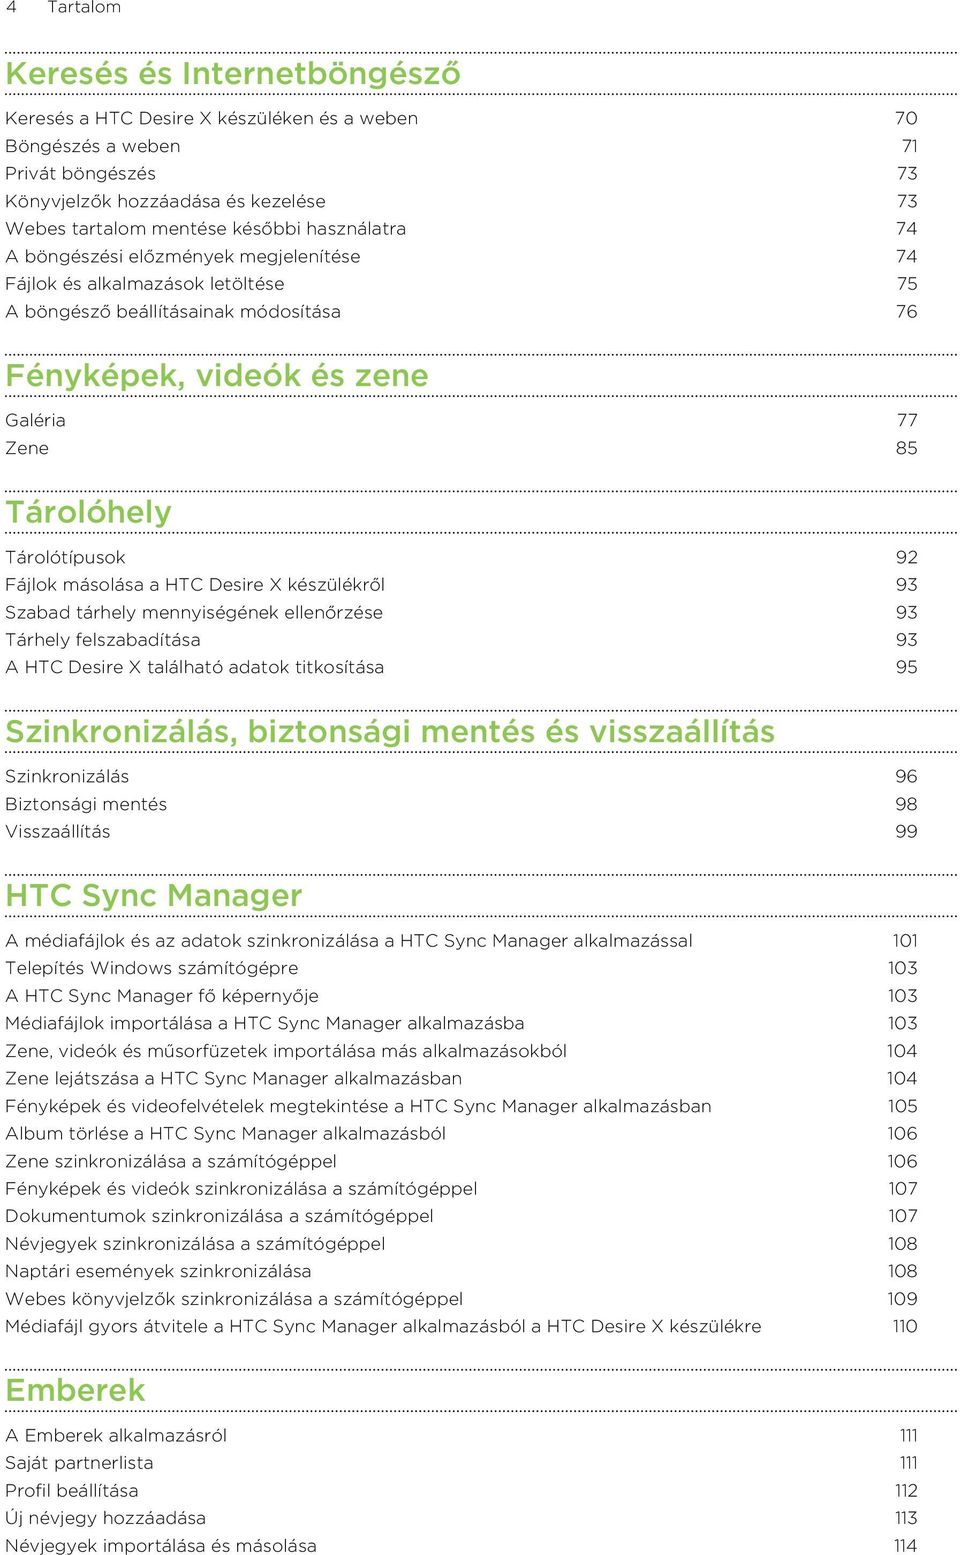 Tárolótípusok 92 Fájlok másolása a HTC Desire X készülékről 93 Szabad tárhely mennyiségének ellenőrzése 93 Tárhely felszabadítása 93 A HTC Desire X található adatok titkosítása 95 Szinkronizálás,